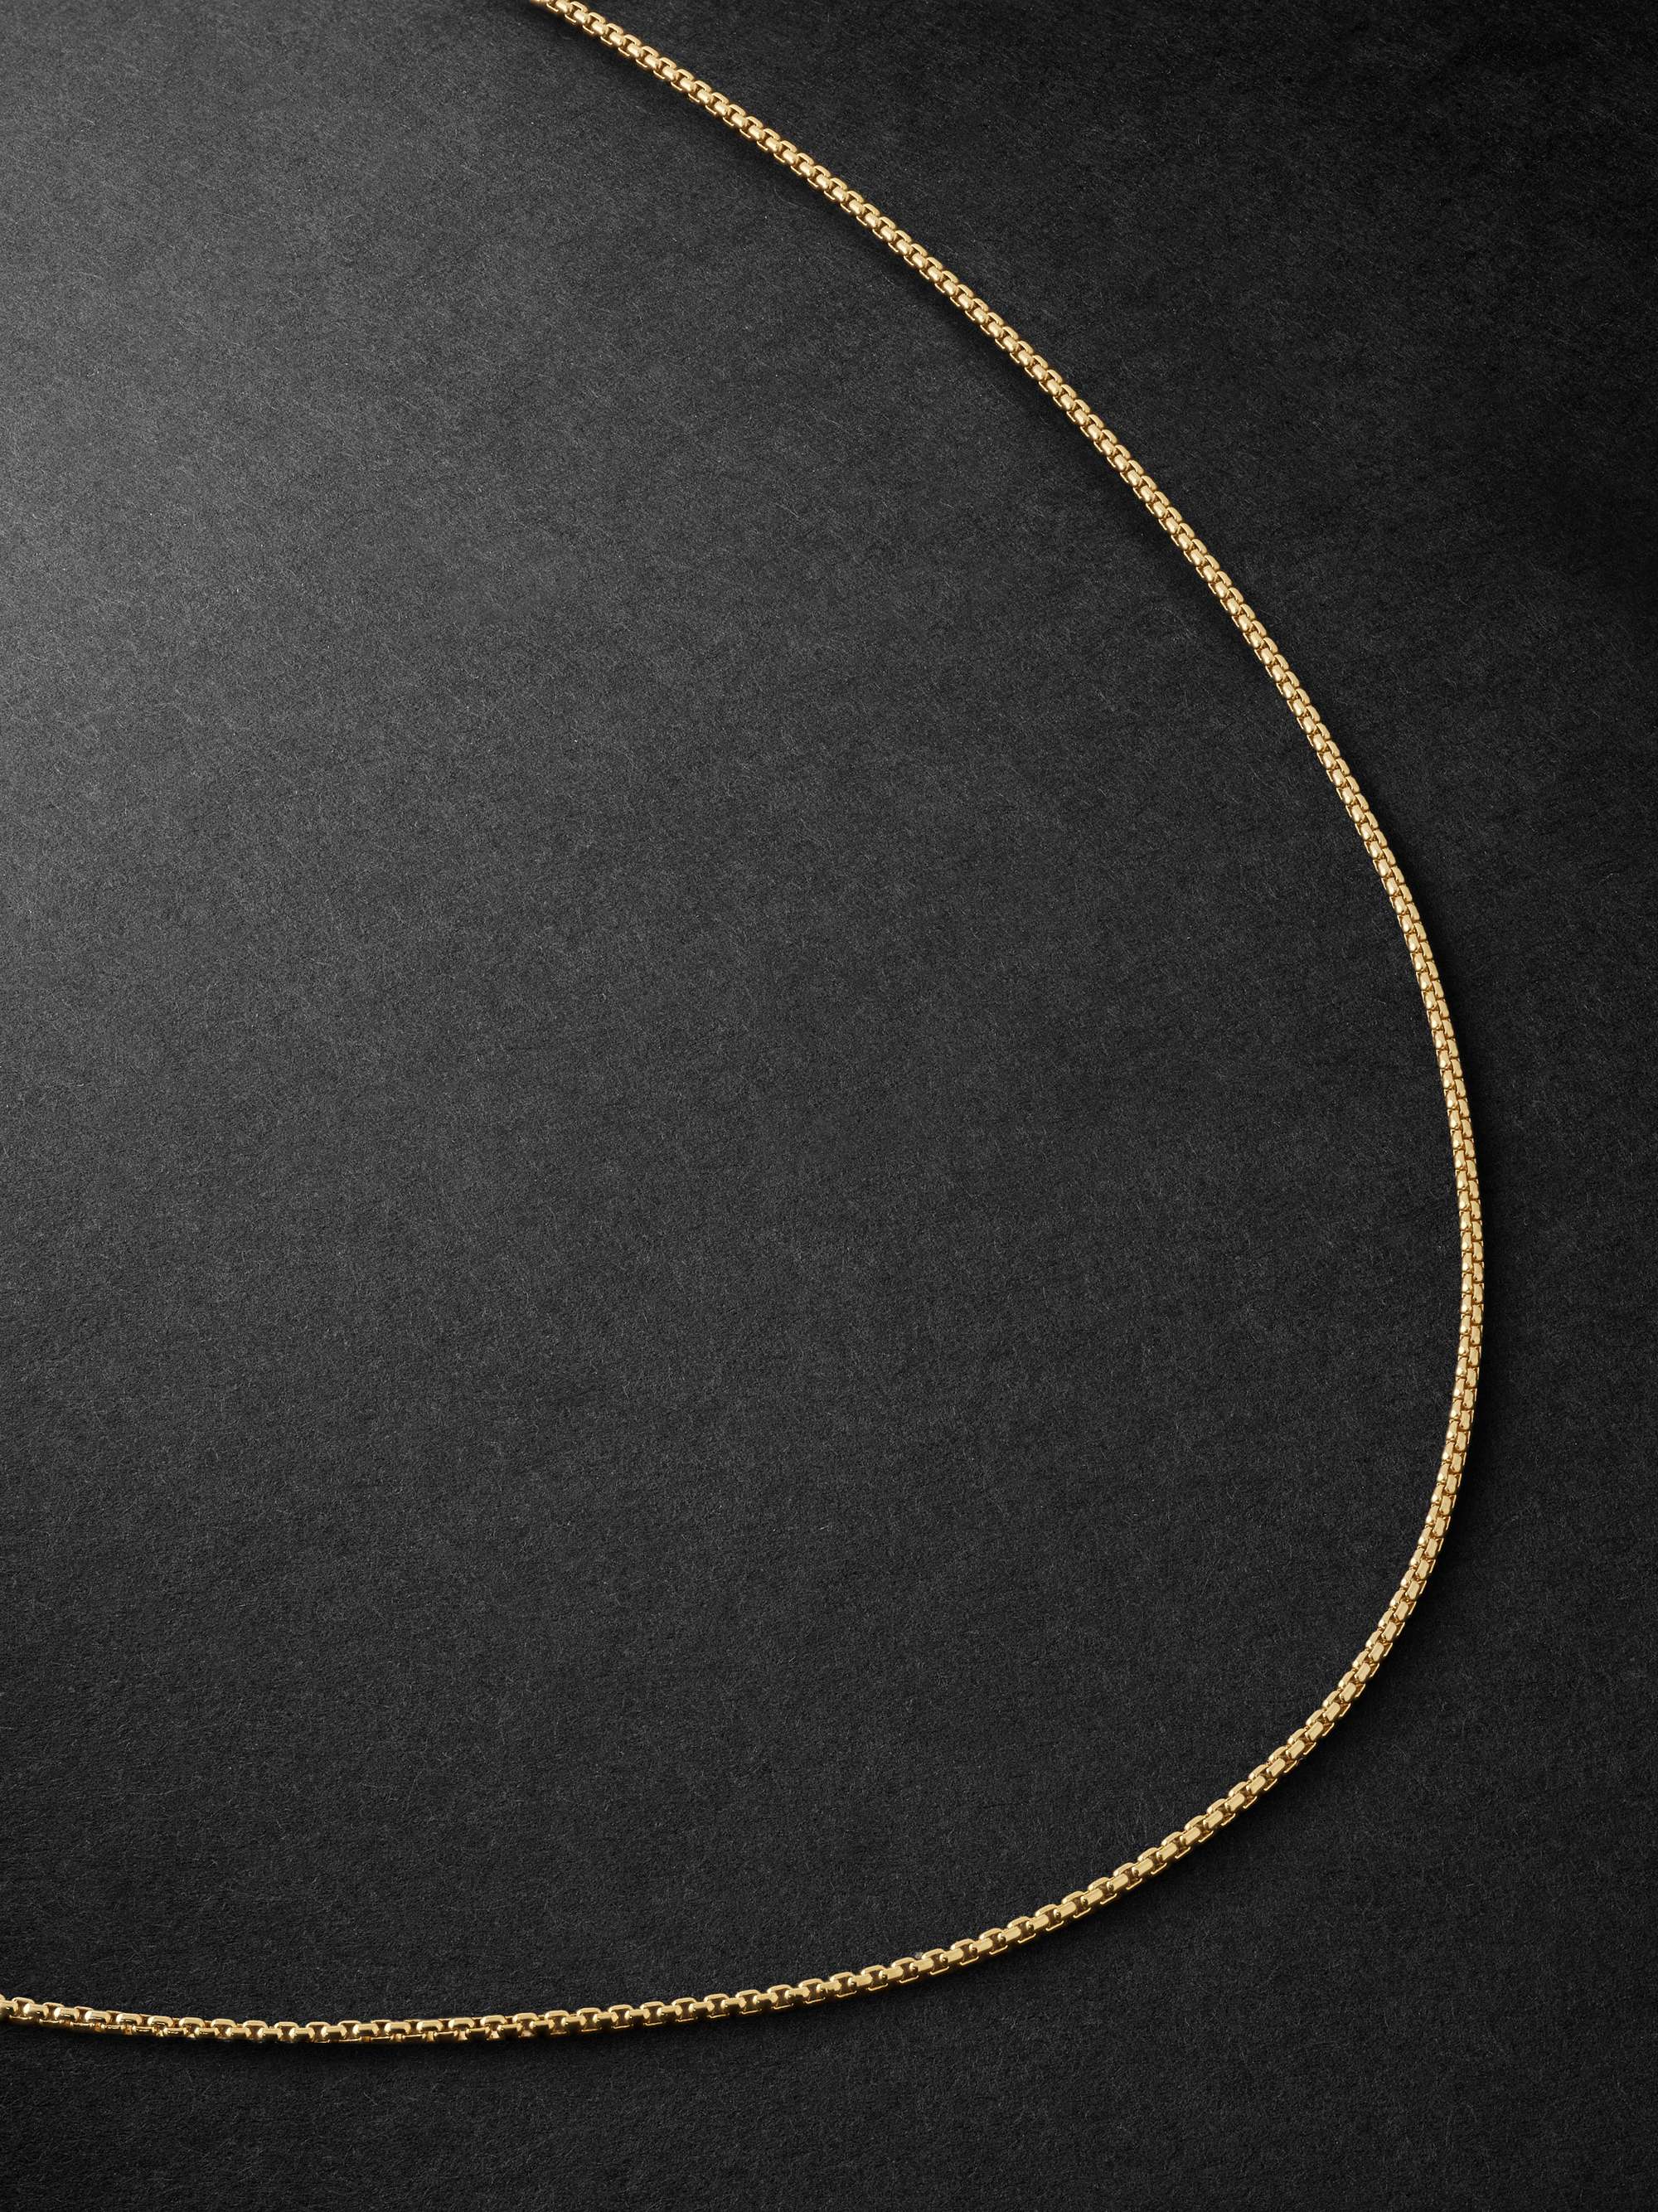 FERNANDO JORGE 18-Karat Gold Chain Necklace